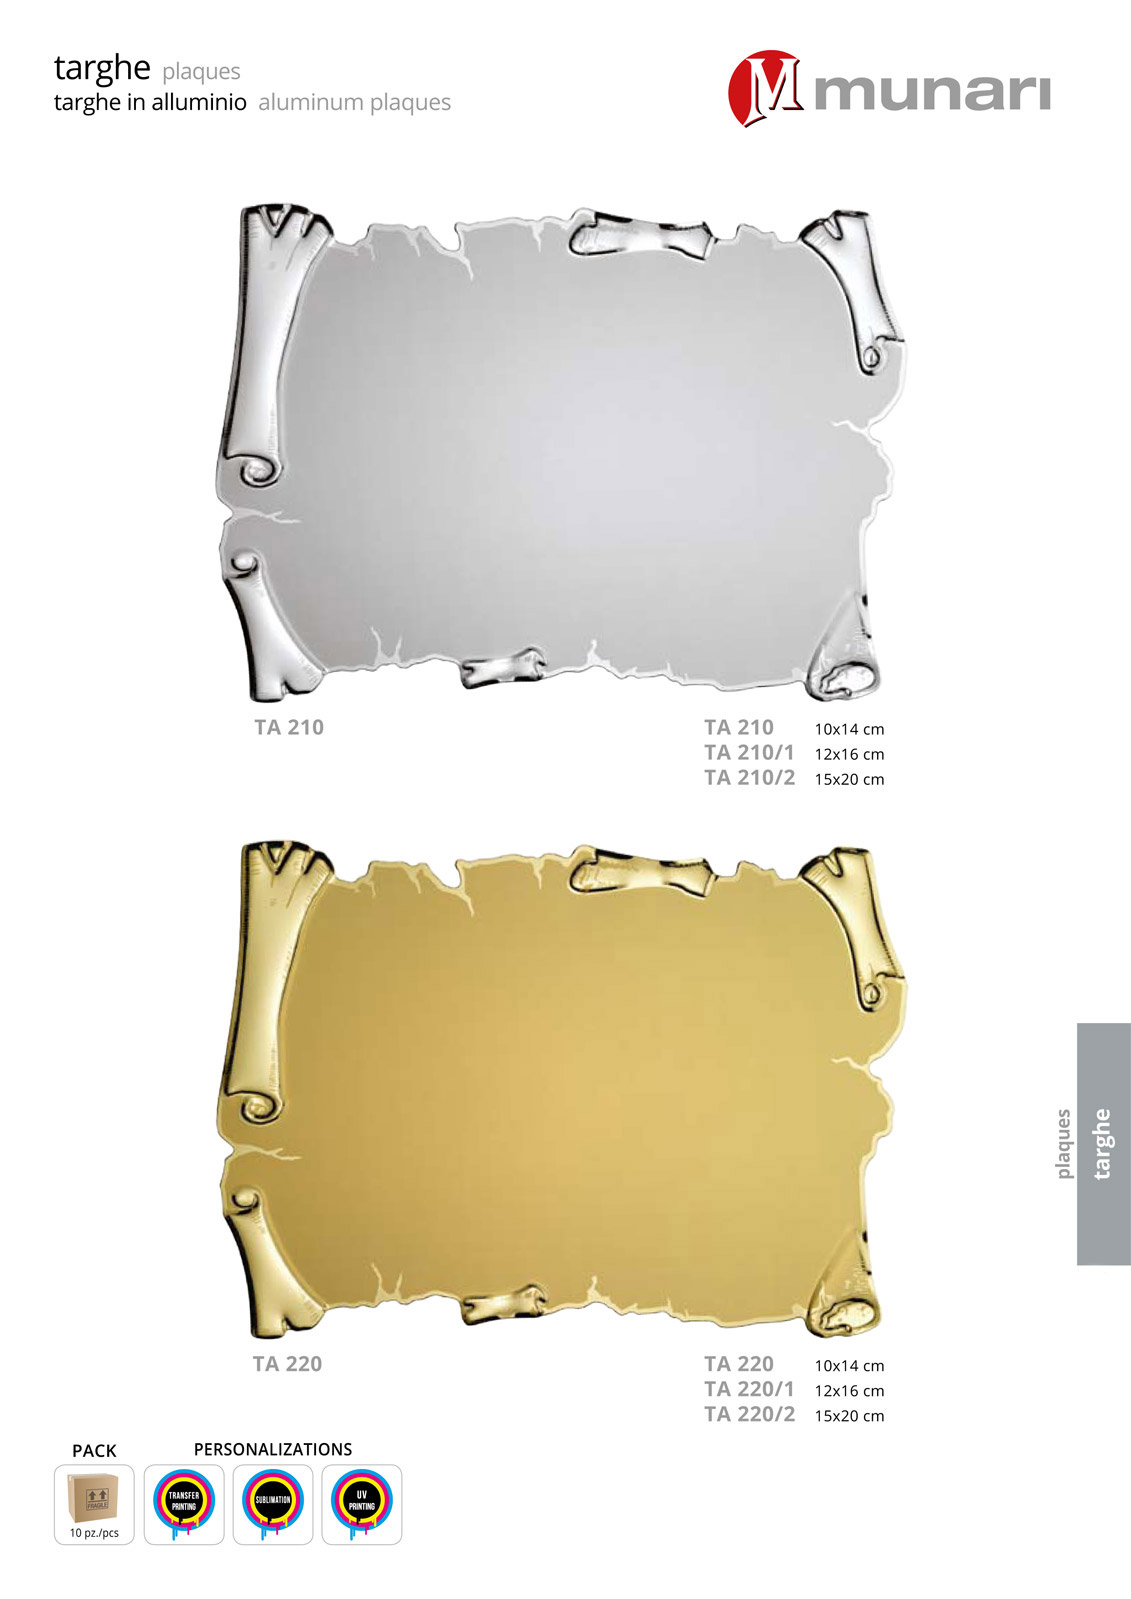 Targhe in alluminio dorato per stampa transfer o sublimazione serie TA 220